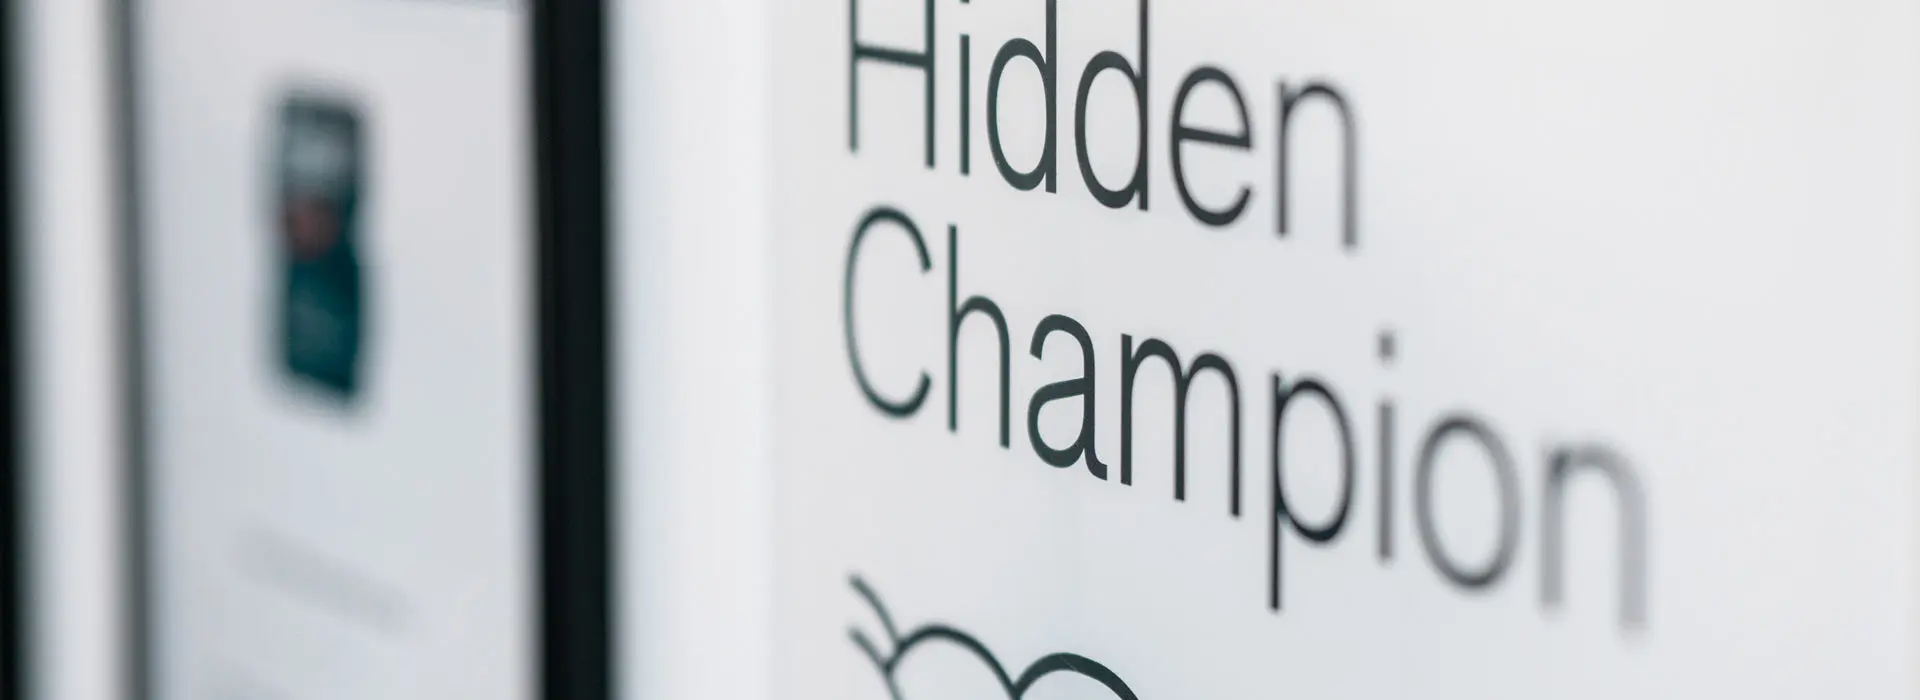 IBP in Düsseldorf gewinnt die Hidden Champion Auszeichnung